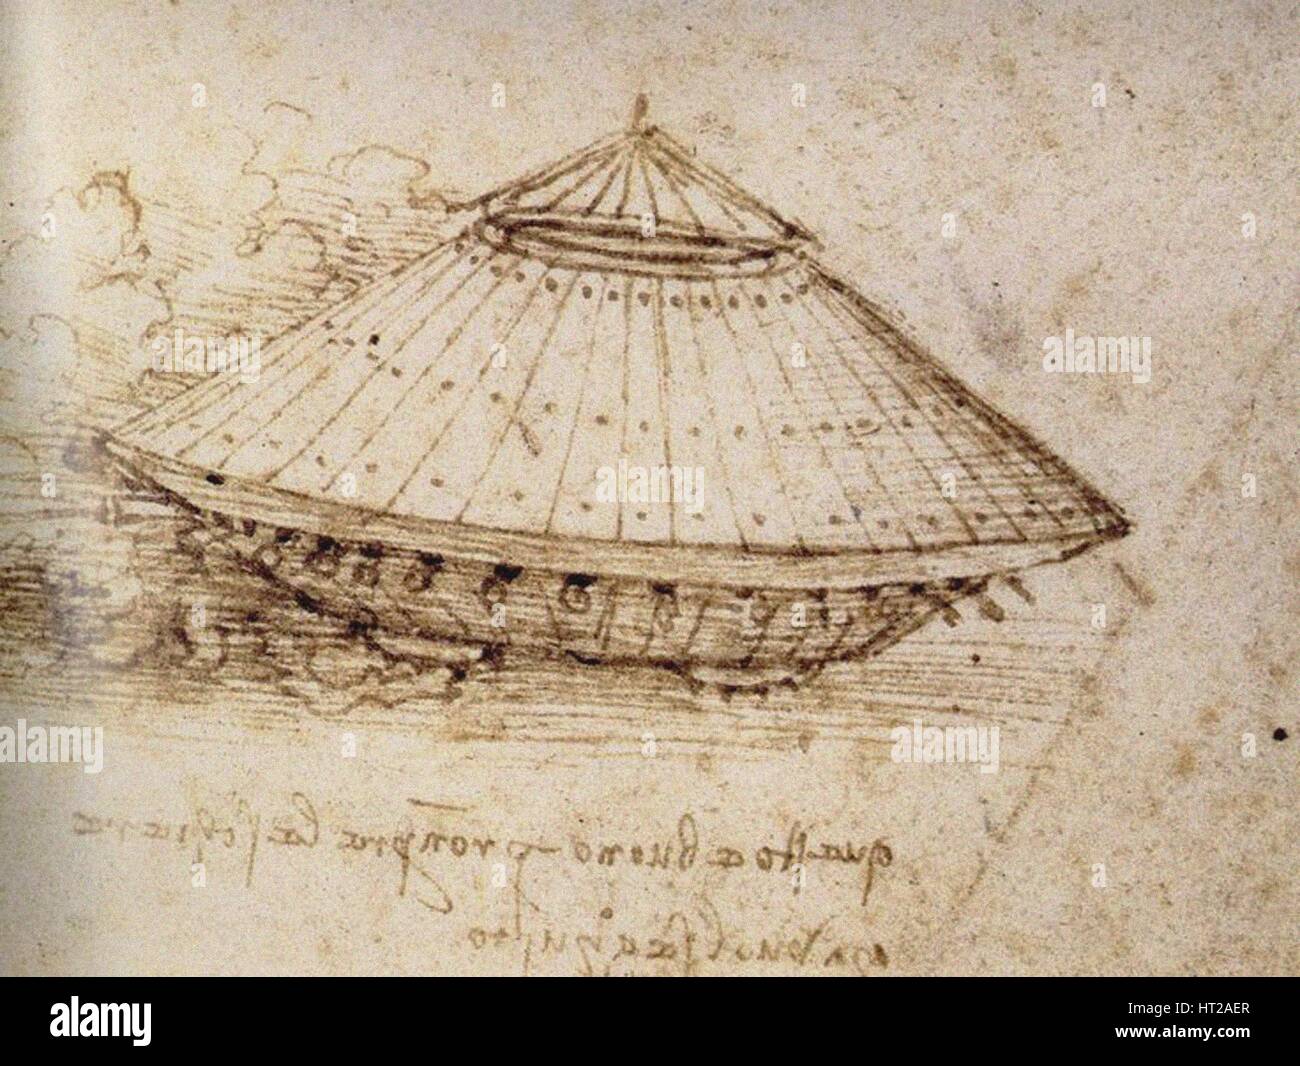 Dibujo de un tanque blindado, ca 1485. Artista: Leonardo da Vinci (1452